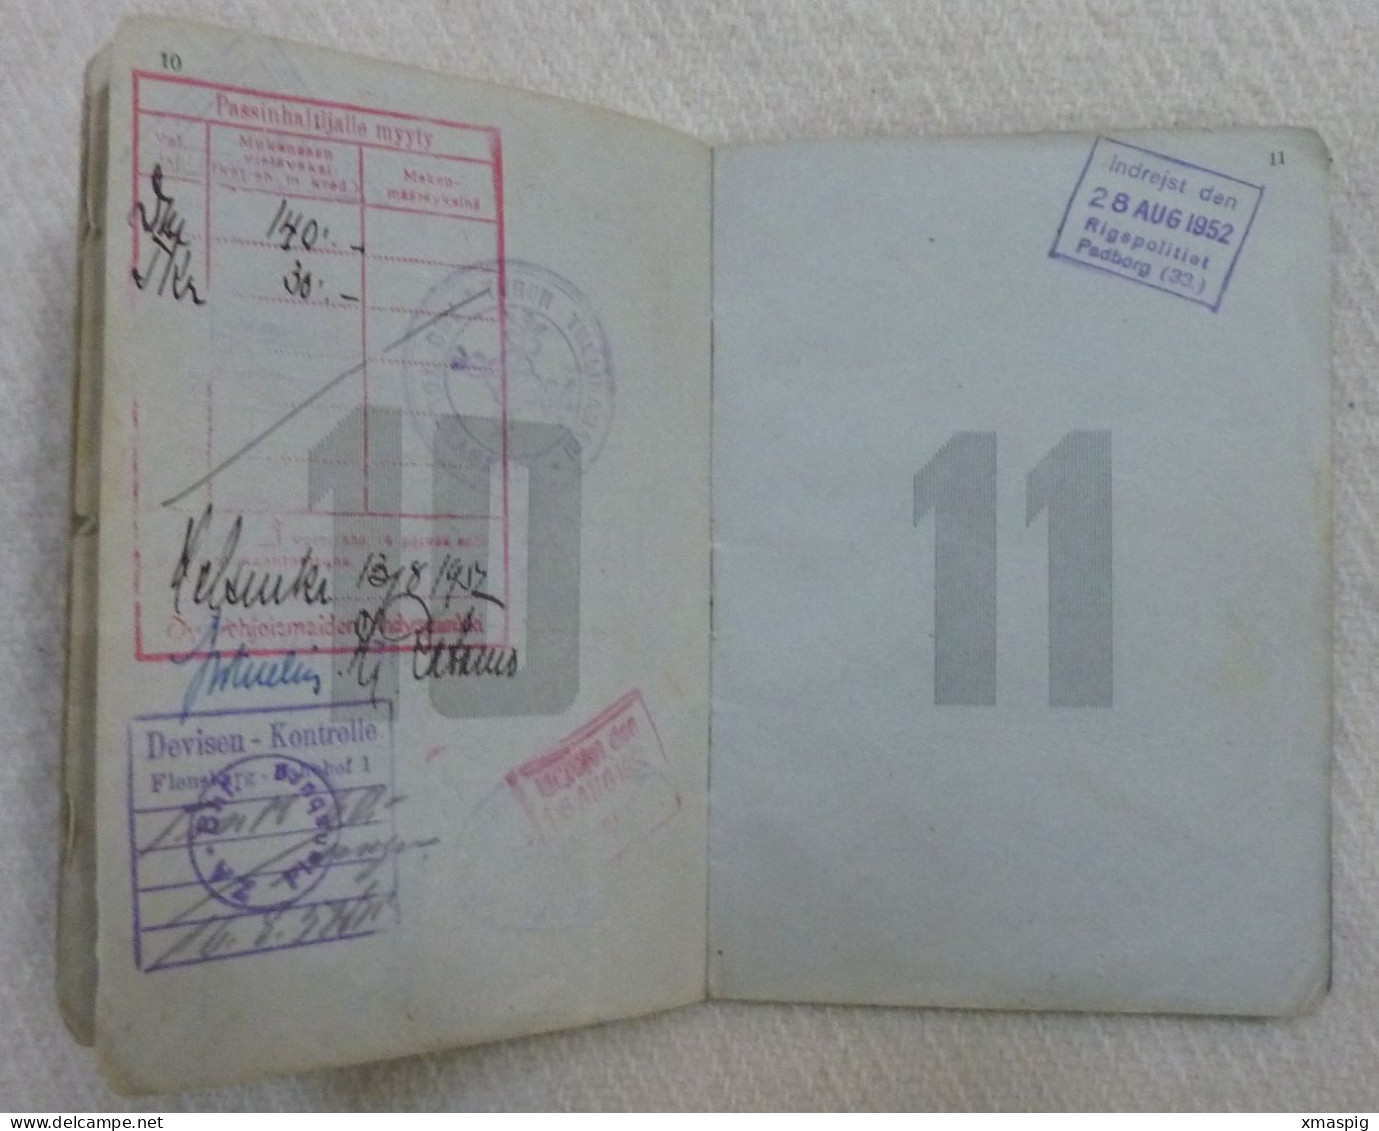 Passport Finland 1952 Reisepass Passeport Pasaporte Obsolete W Revenue Stamps - Historische Documenten